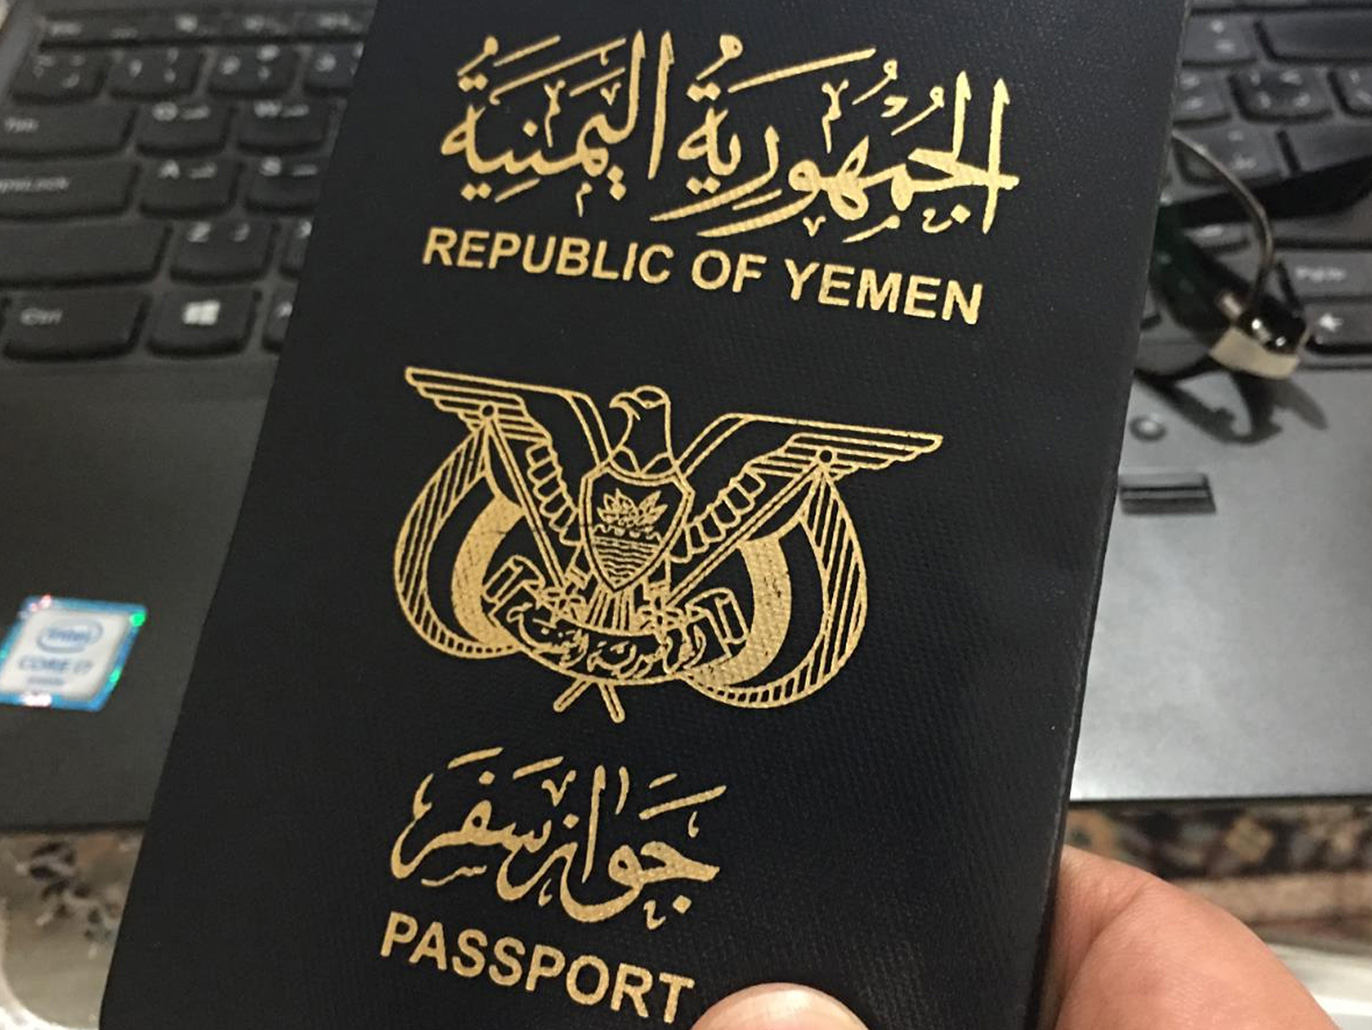 استعلام عن جواز سفر يمني والوثائق اللازمة للحصول على وثيقة تصريح المرور